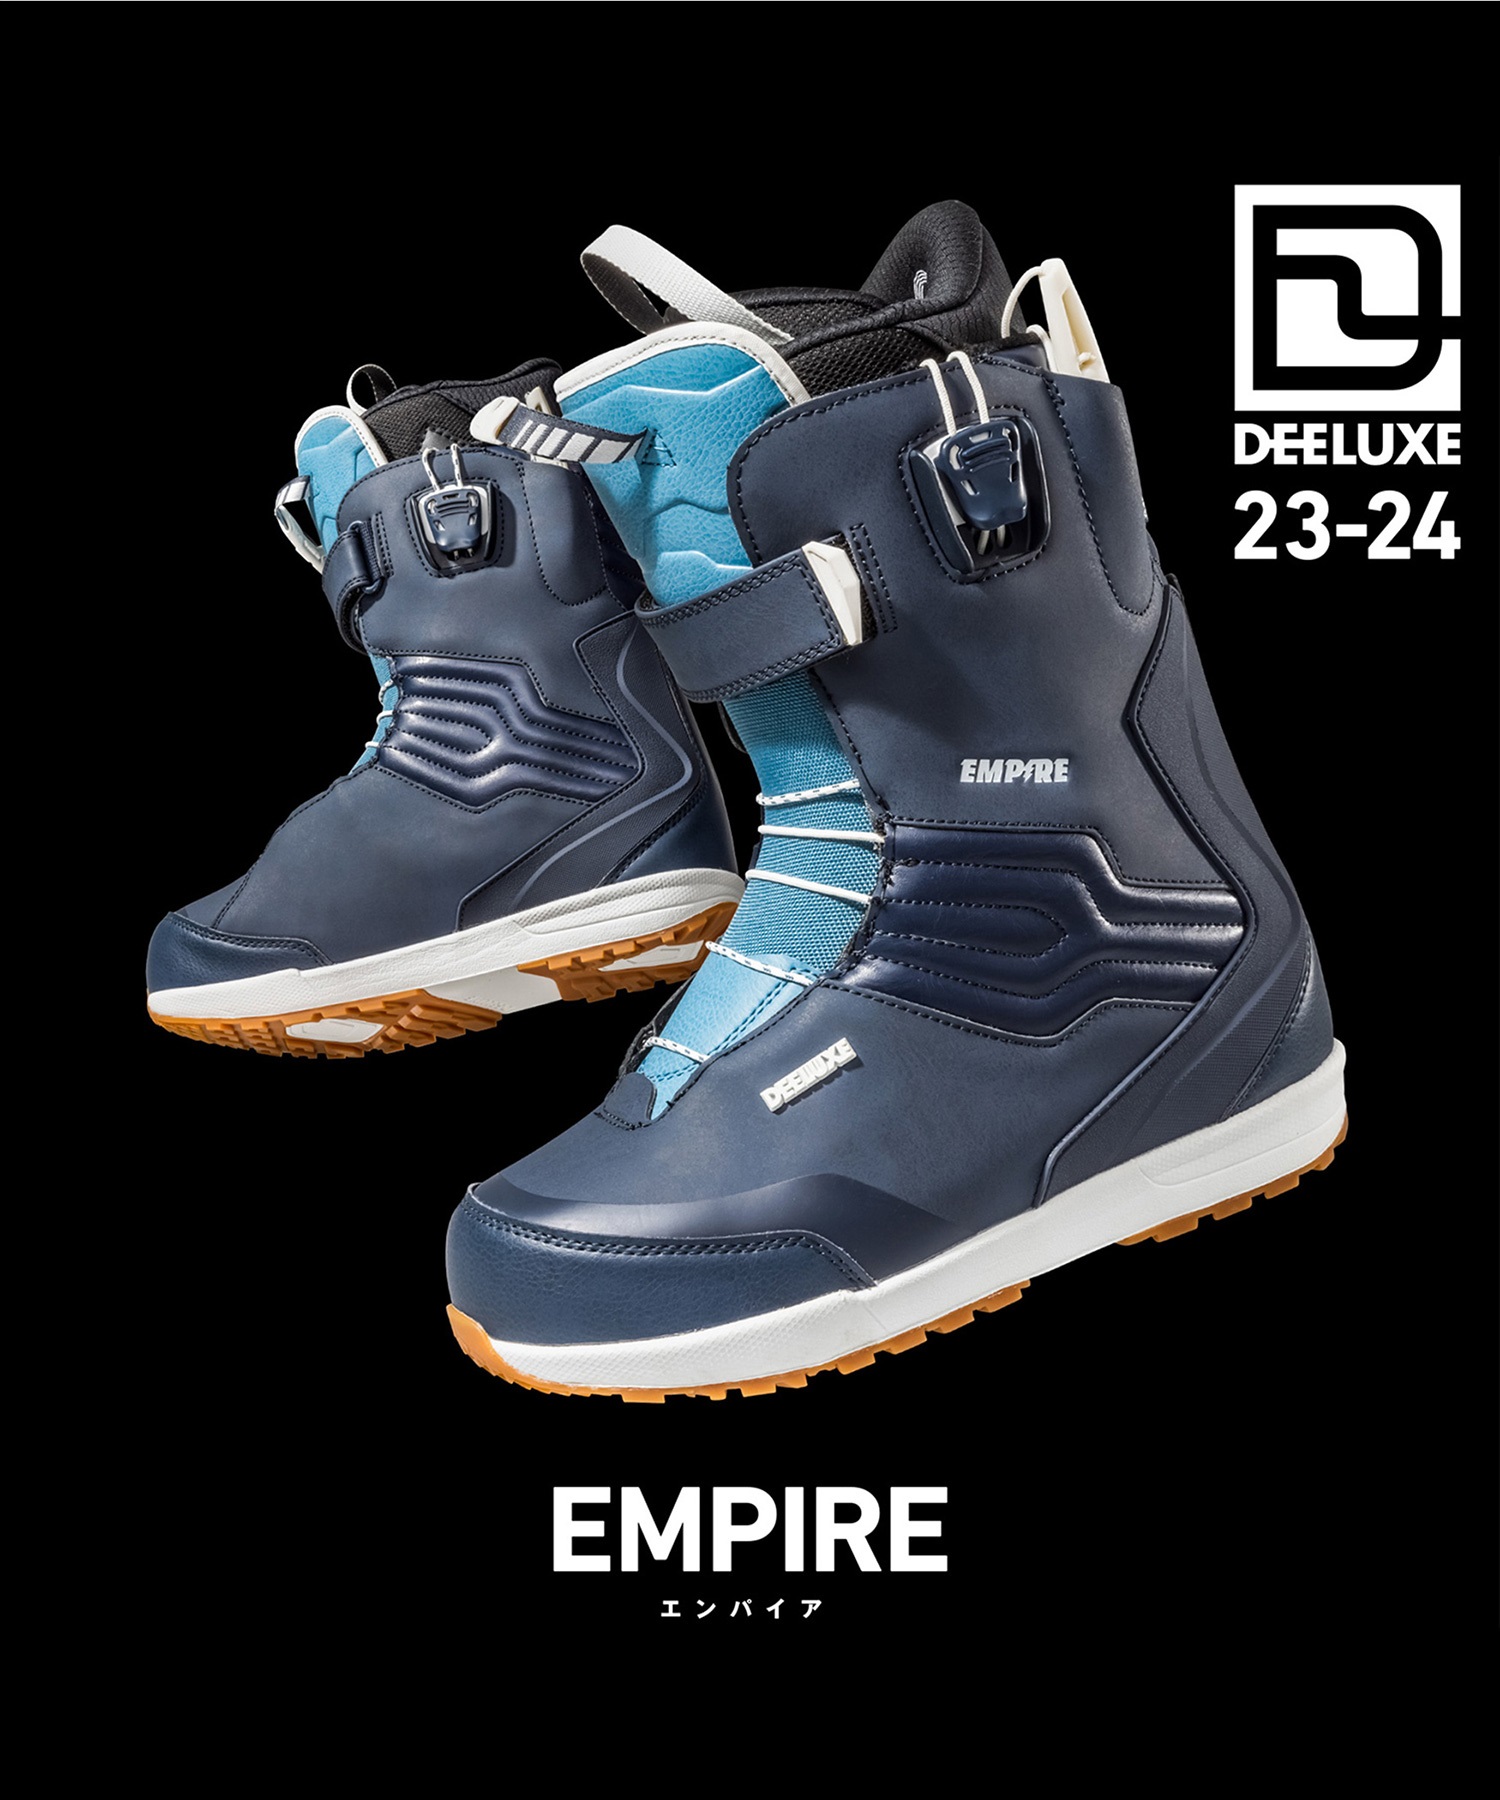 スノーボード ブーツ メンズ DEELUXE ディーラックス EMPIRE S4 23-24 ...